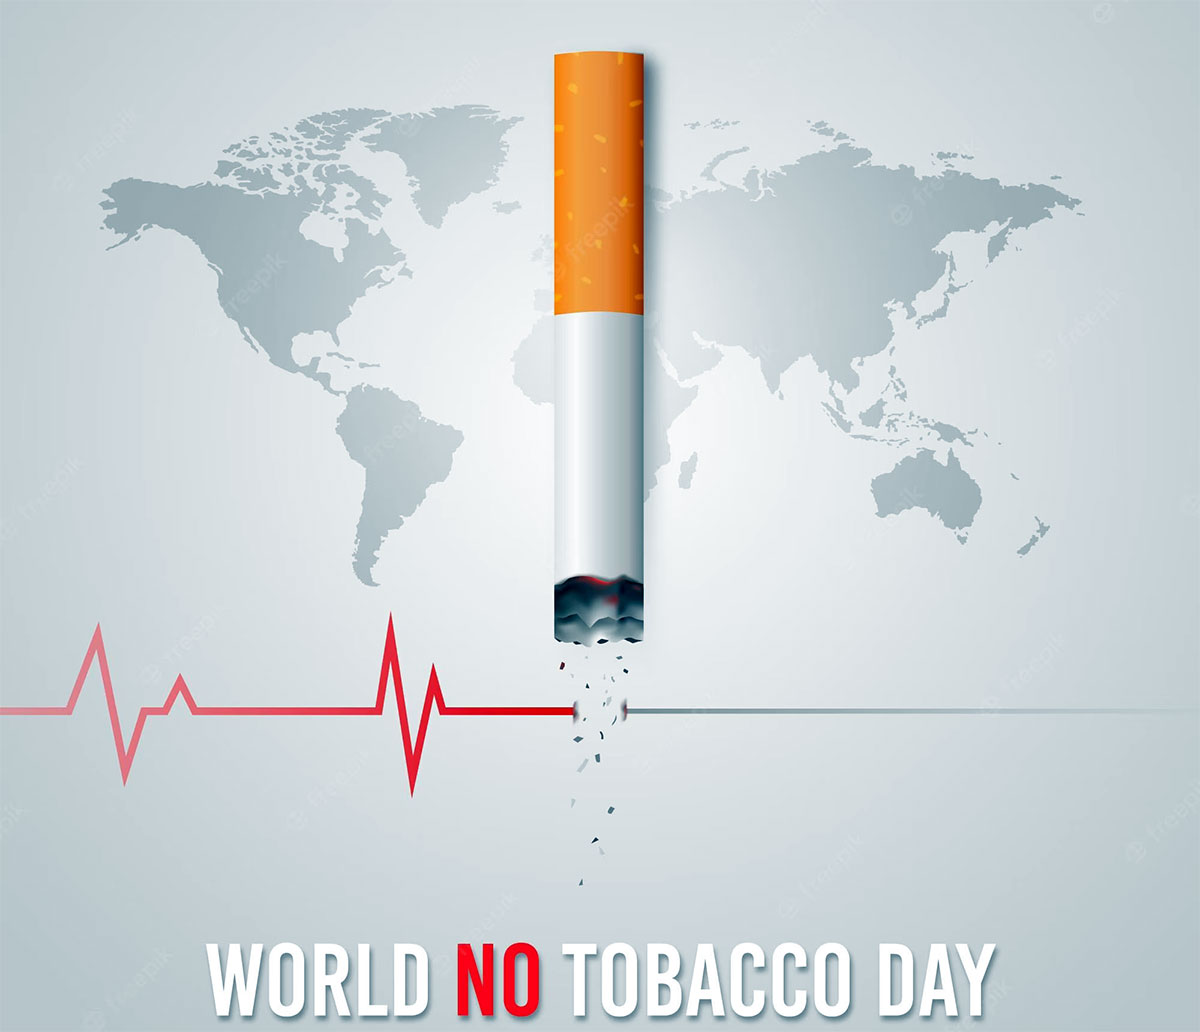  Ιατρικός Σύλλογος: Παγκόσμια ημέρα κατά του καπνίσματος